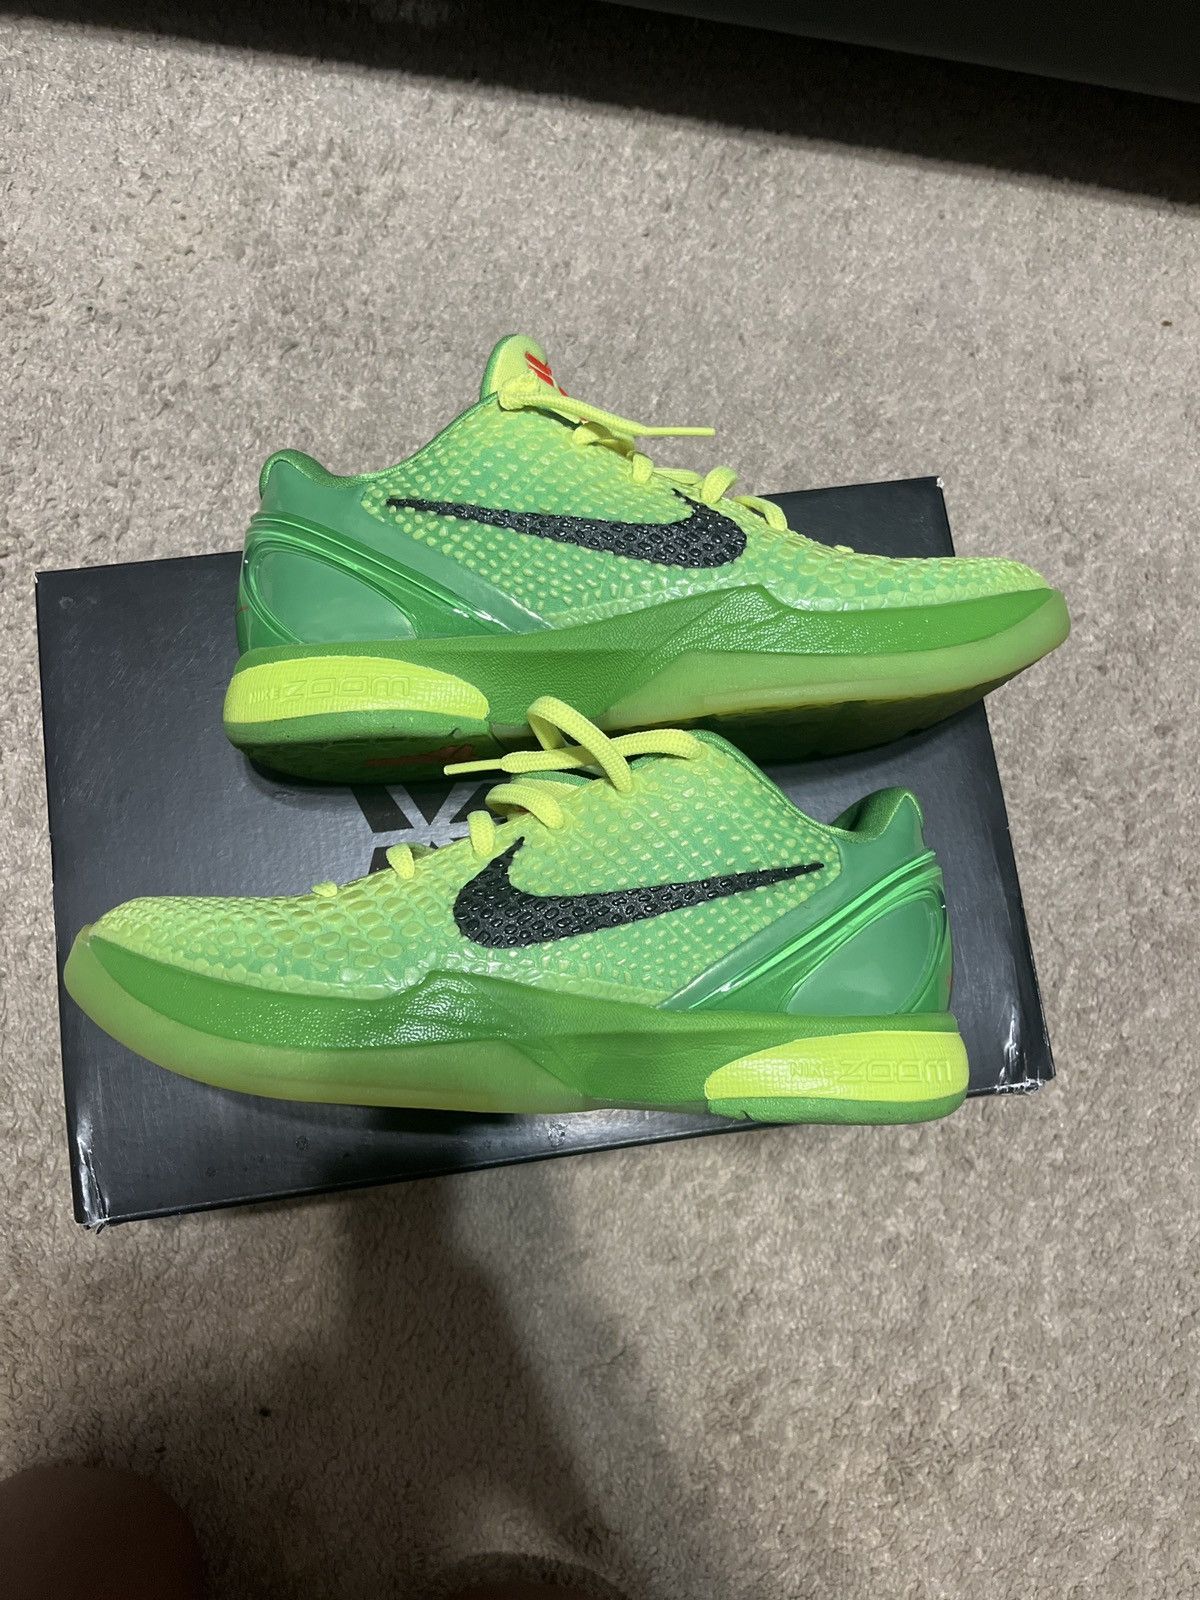 Nike Kobe 6 grinches | Grailed